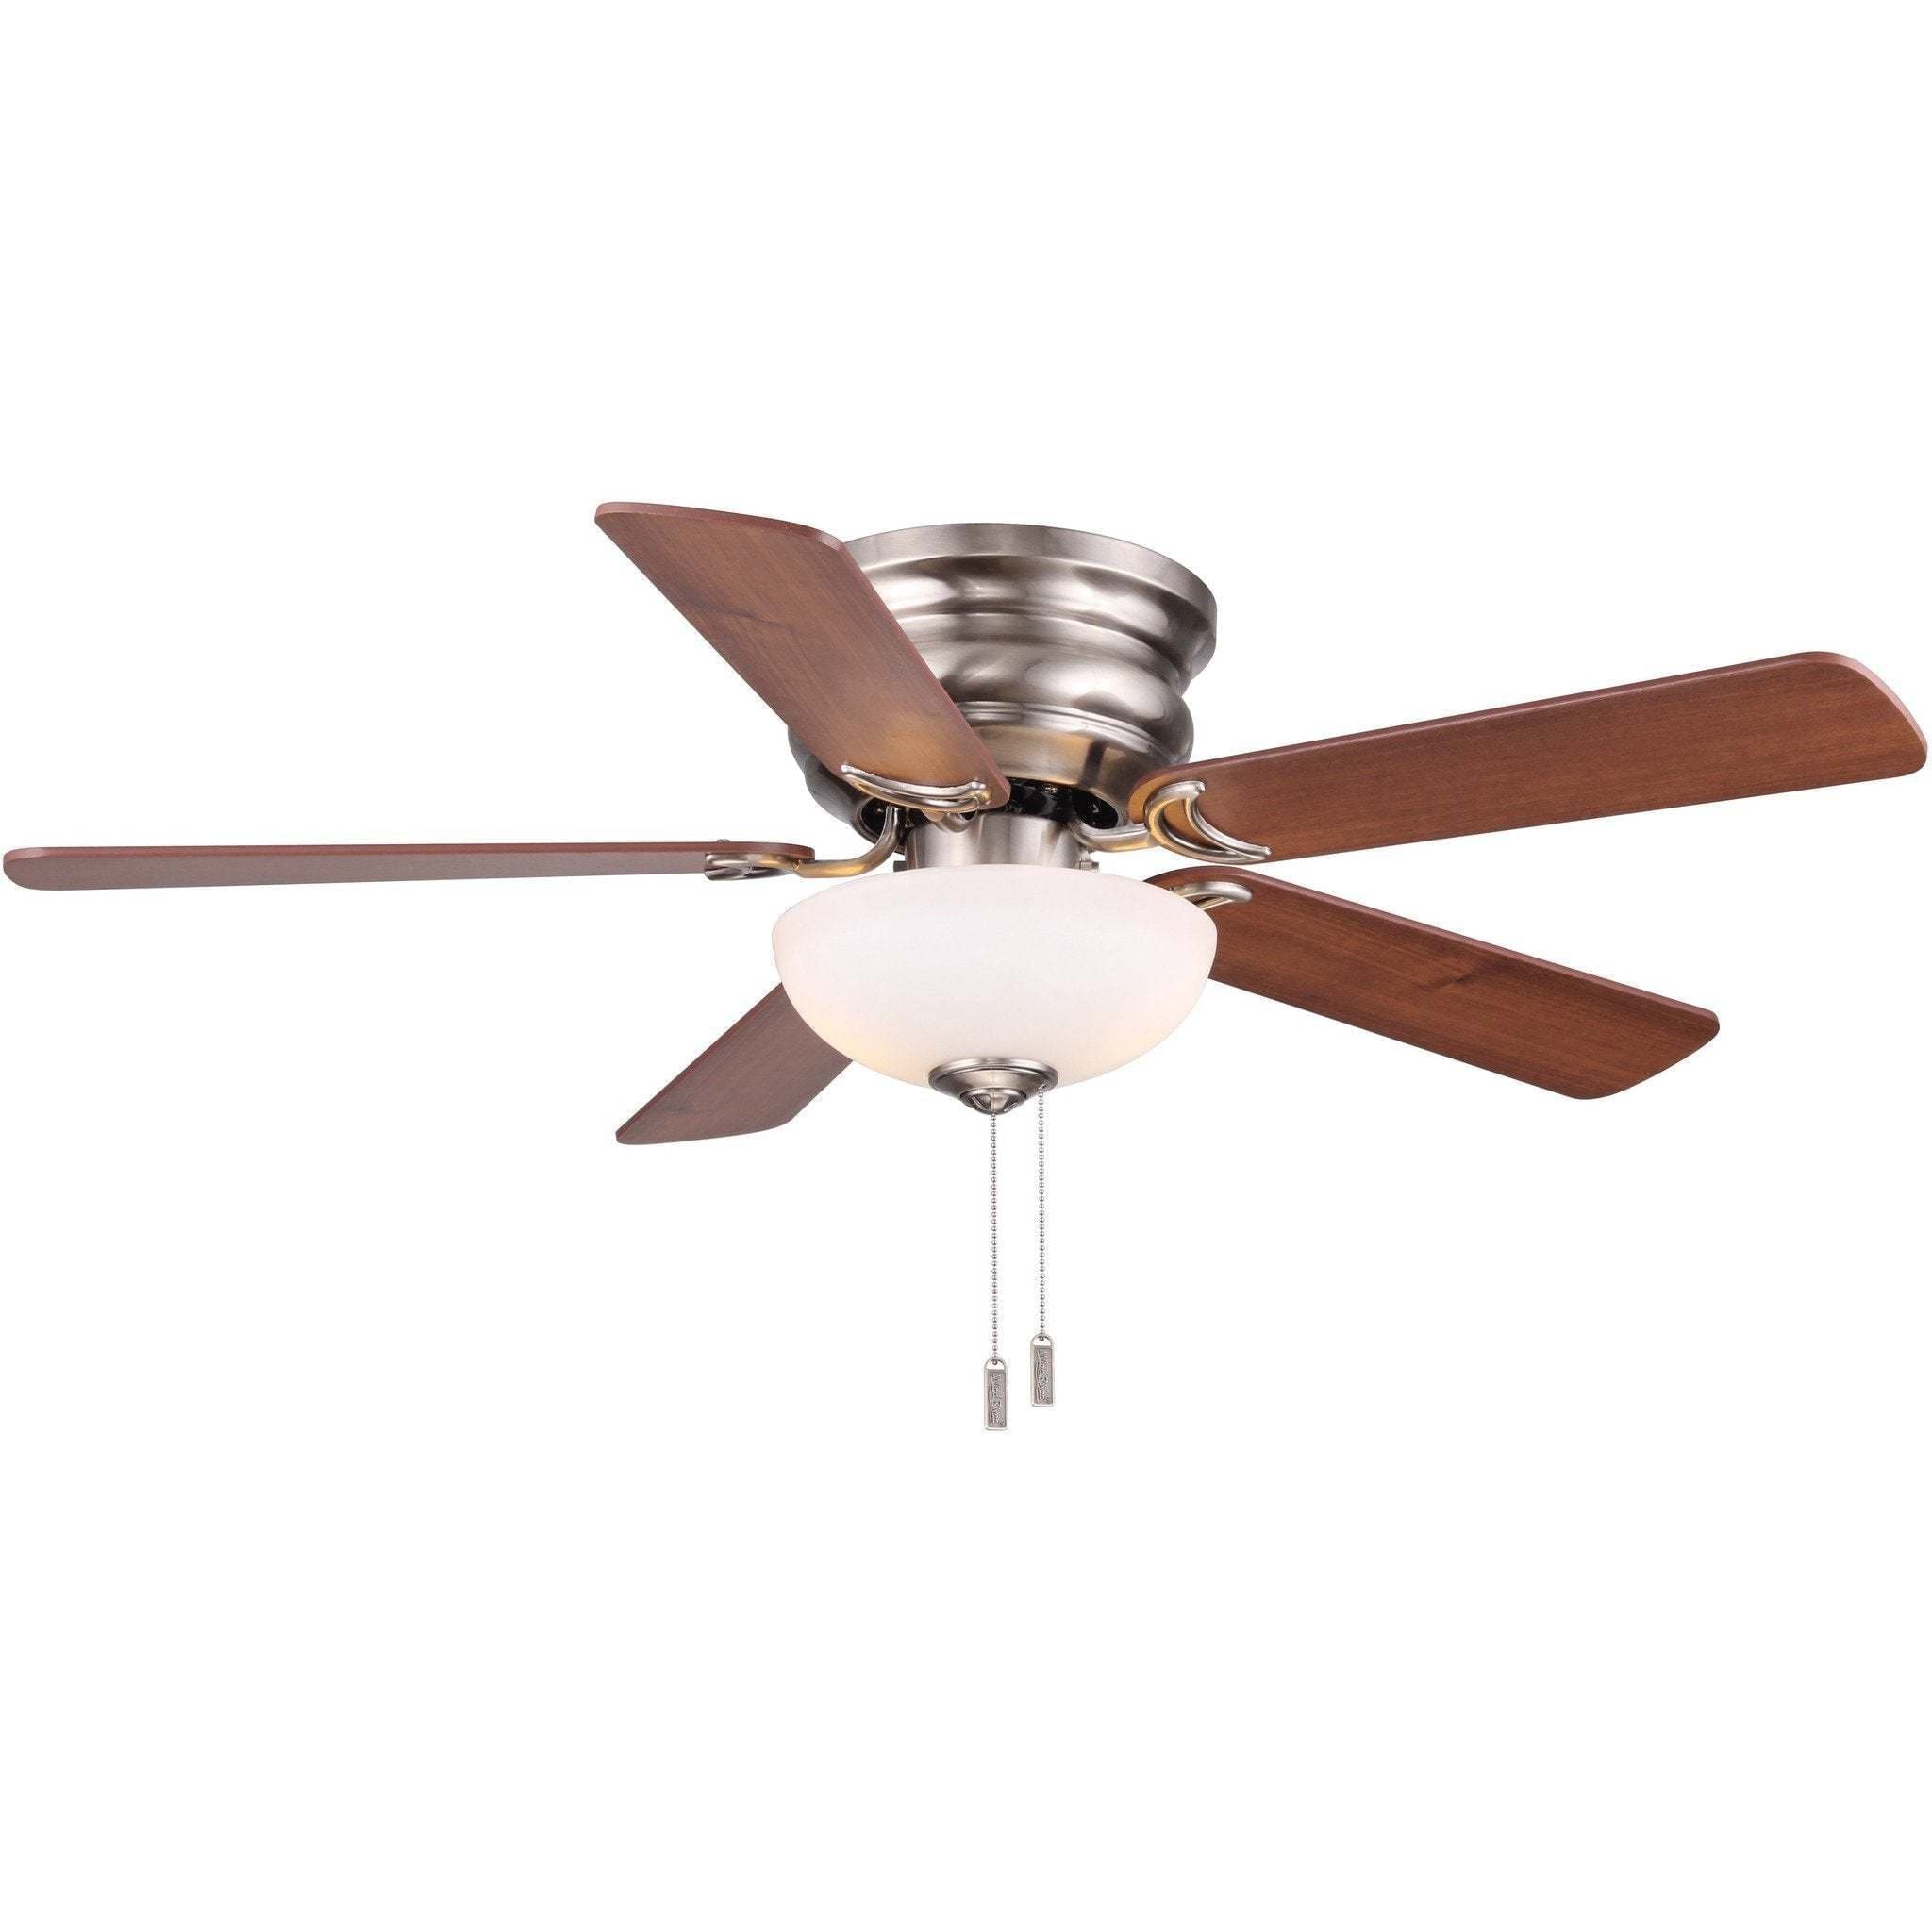 Wind River Frisco Ceiling Fan - Image 1